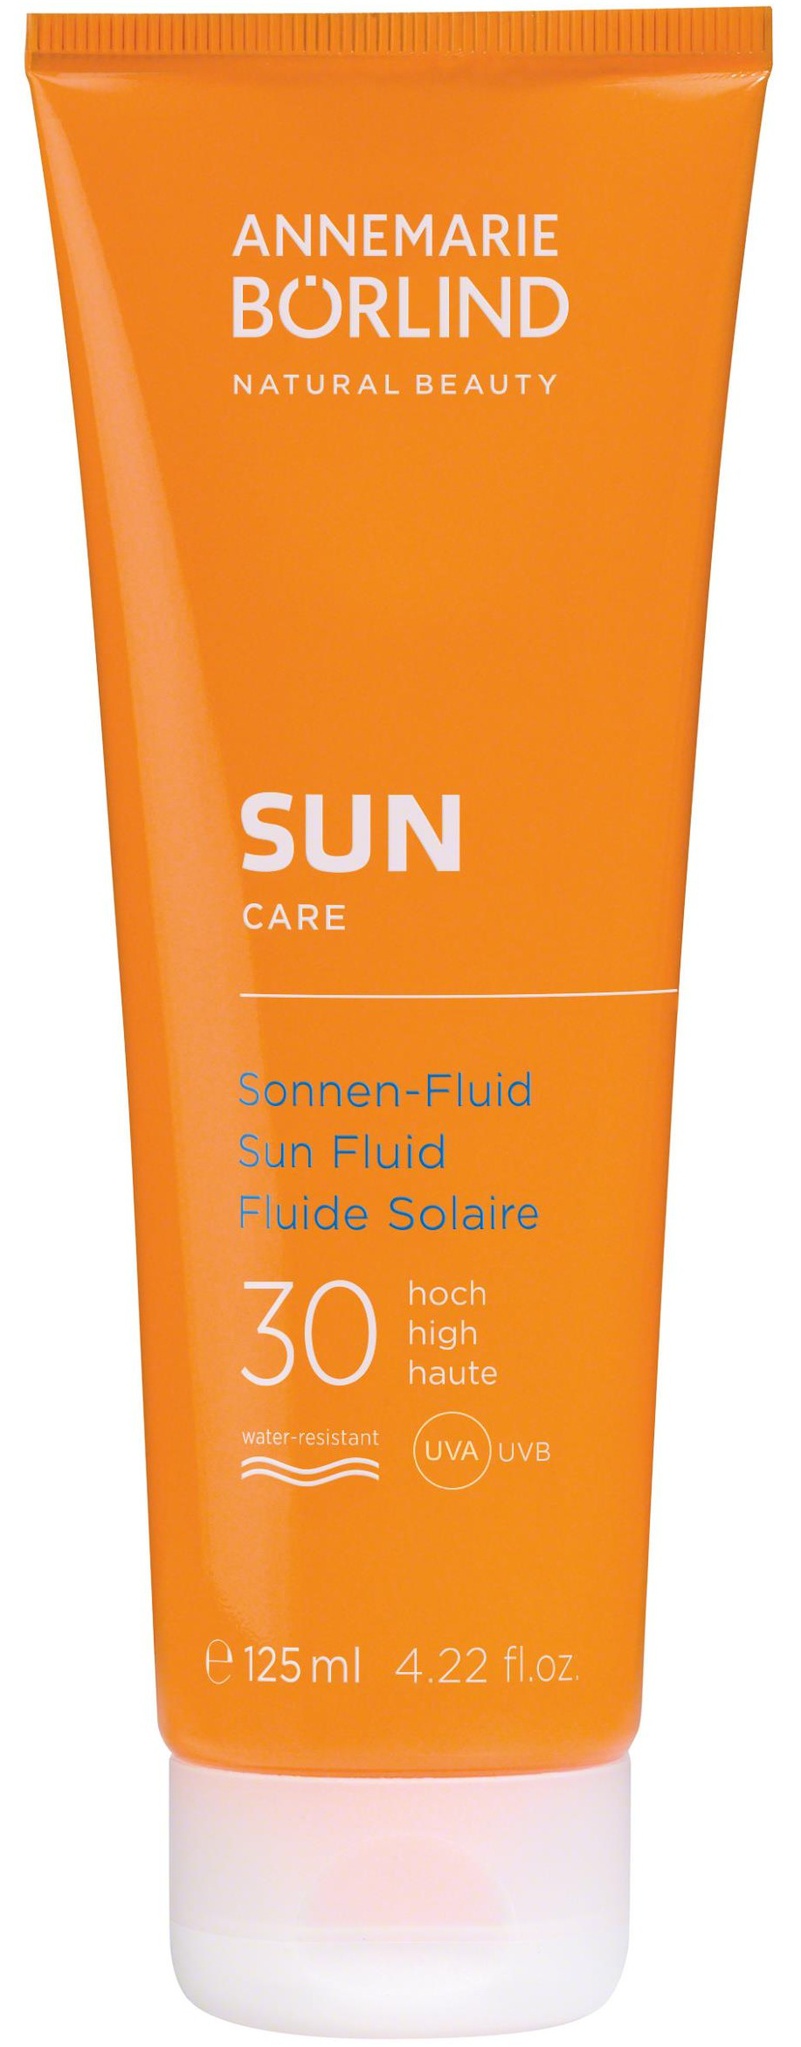 Annemarie Börlind Sun Care Sun Fluid SPF 30